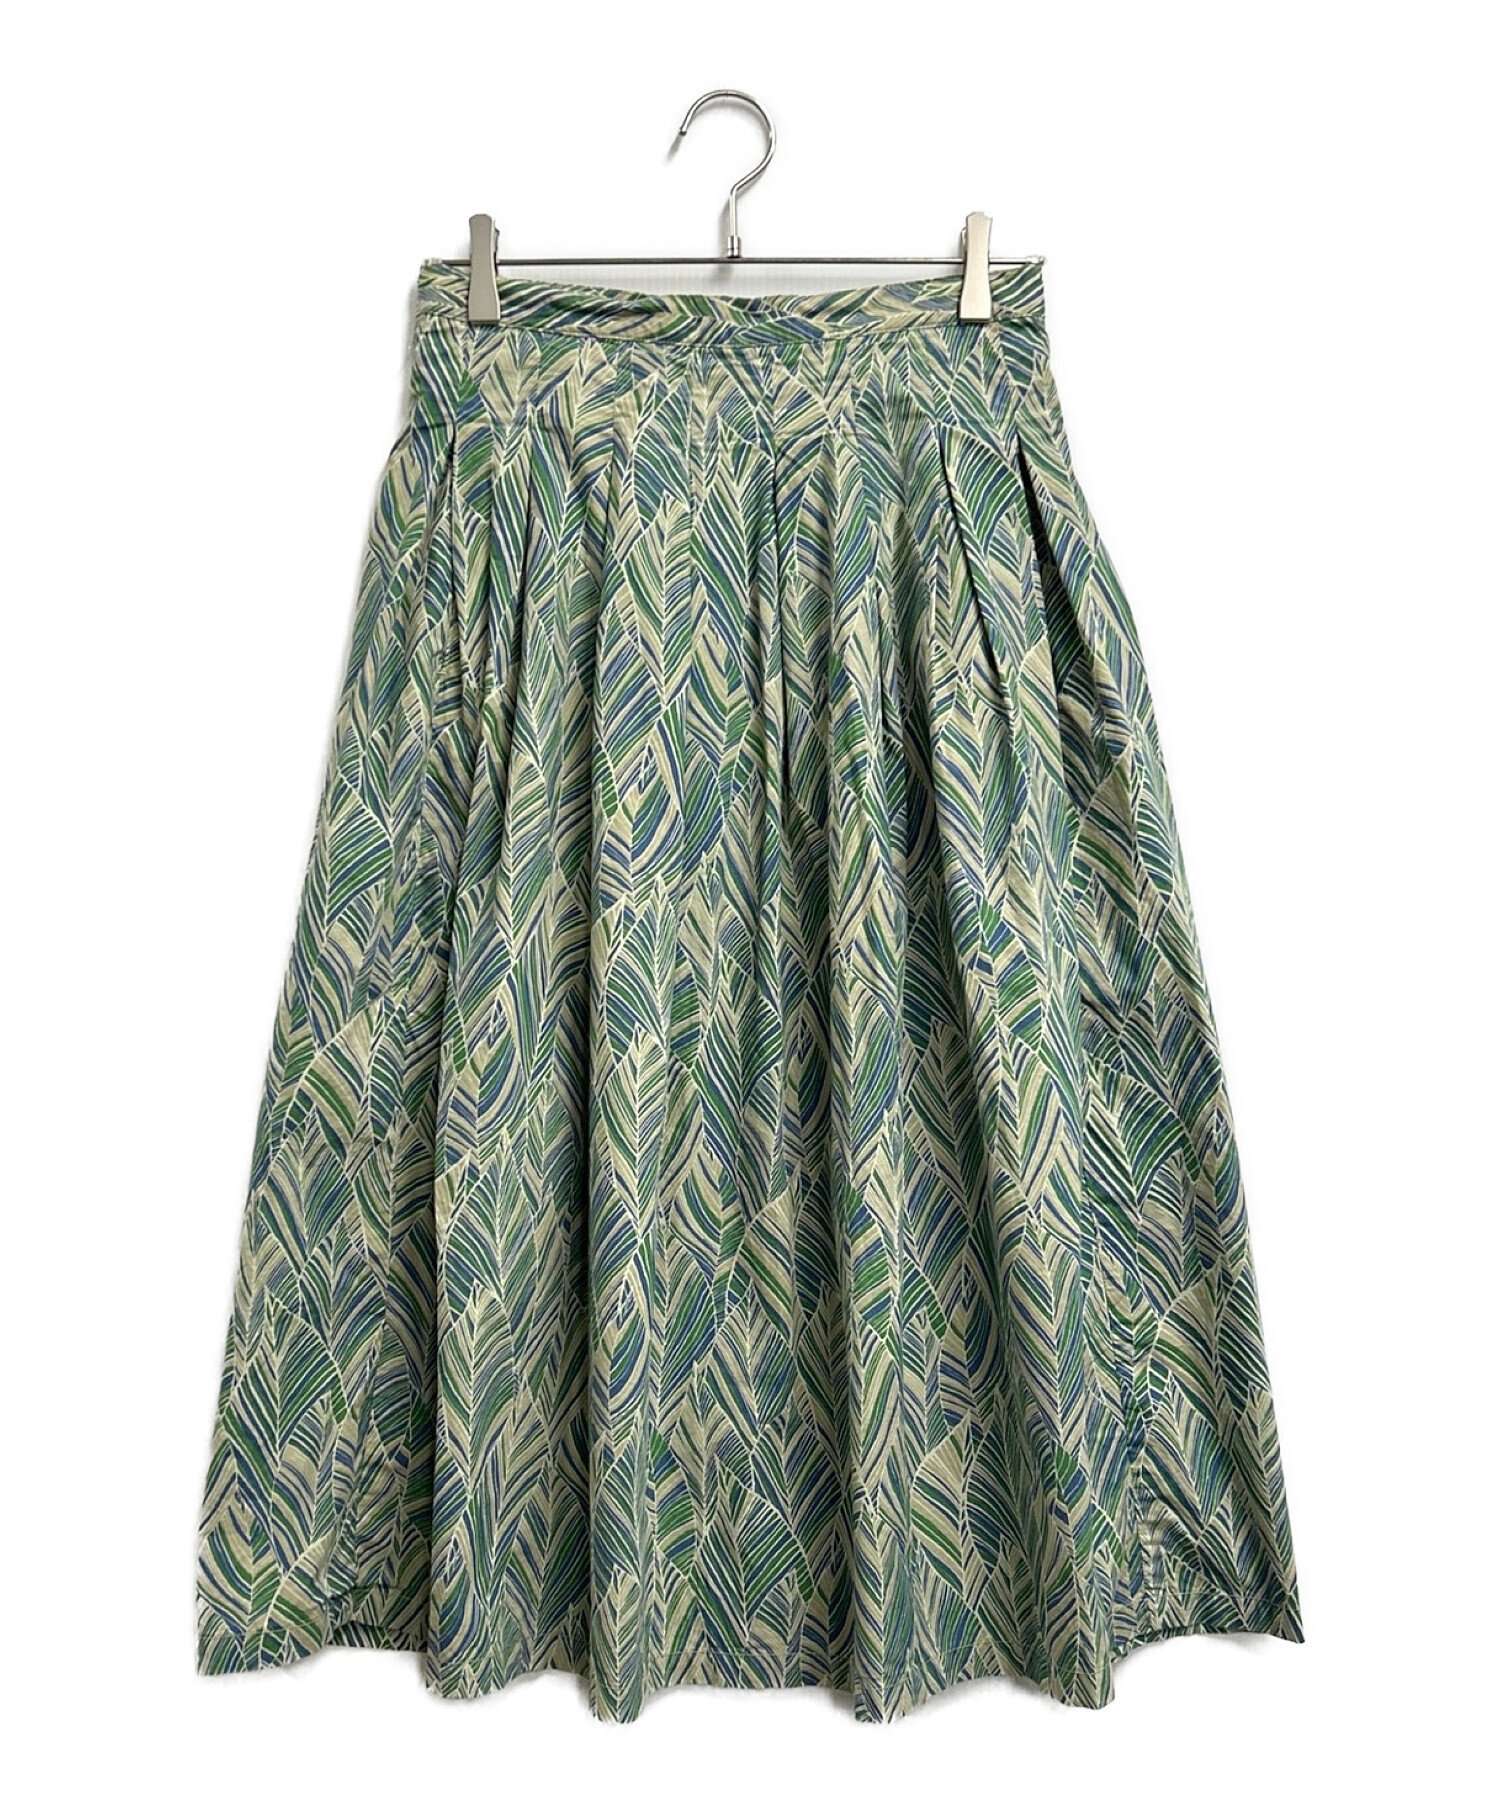 GRANDMA MAMA DAUGHTER (グランマママドーター) 総柄スカート グリーン×ベージュ サイズ:SIZE 1 未使用品